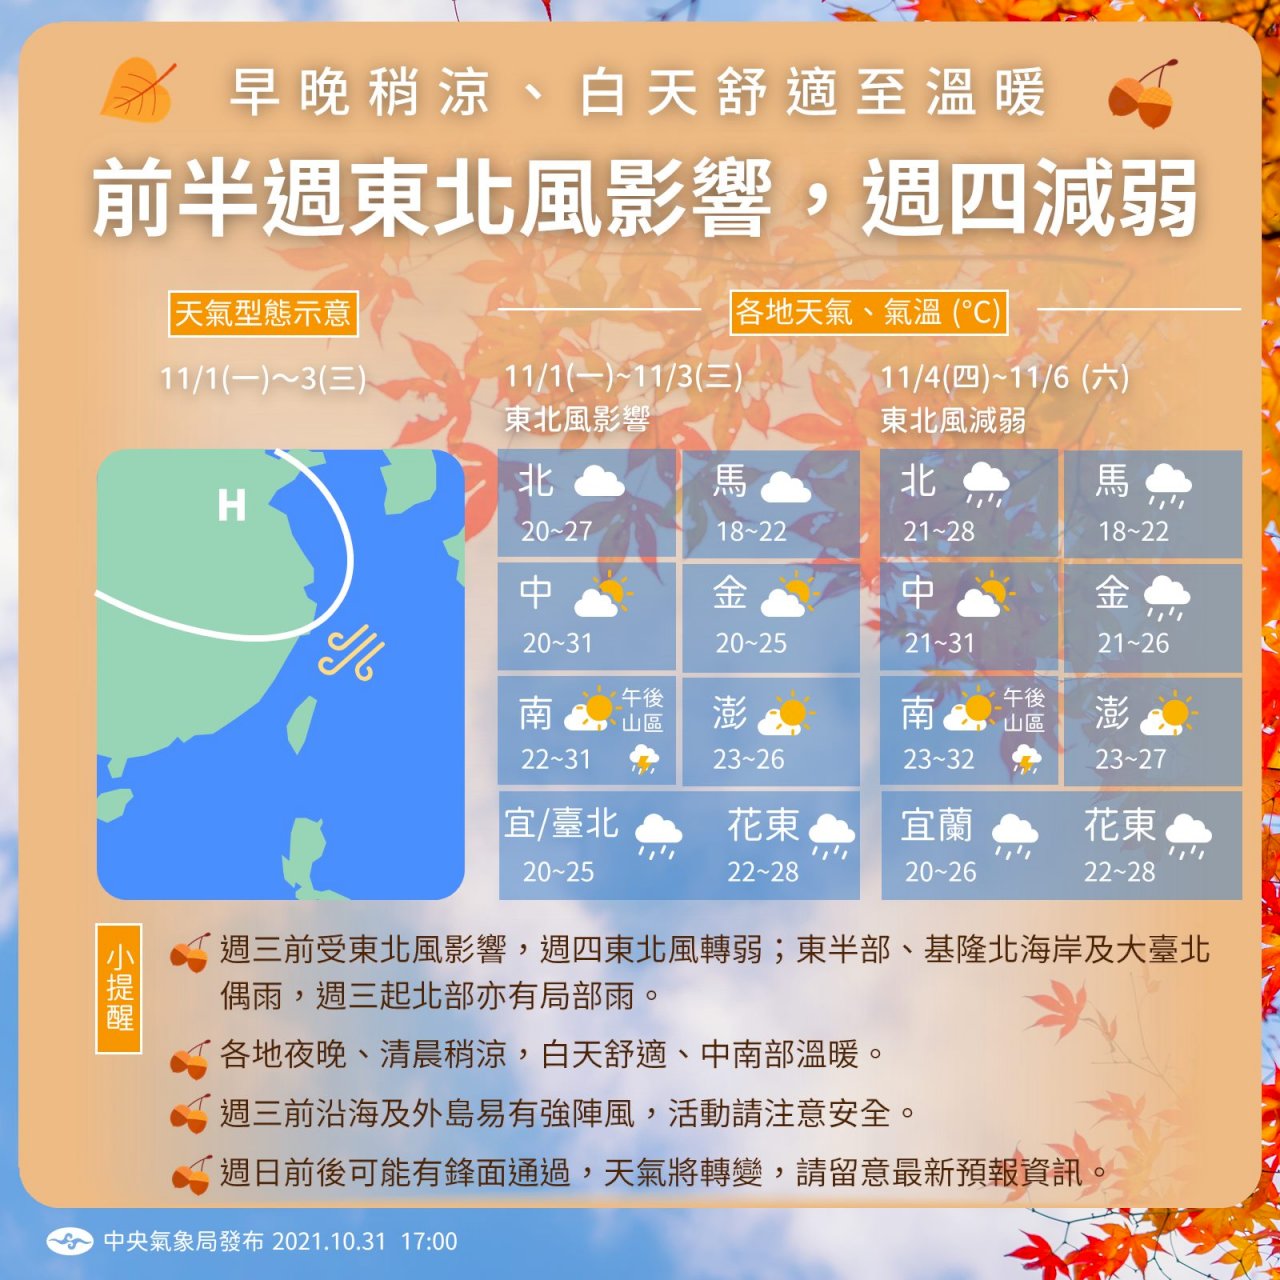 東北季風8日增強 北台灣僅16至18度